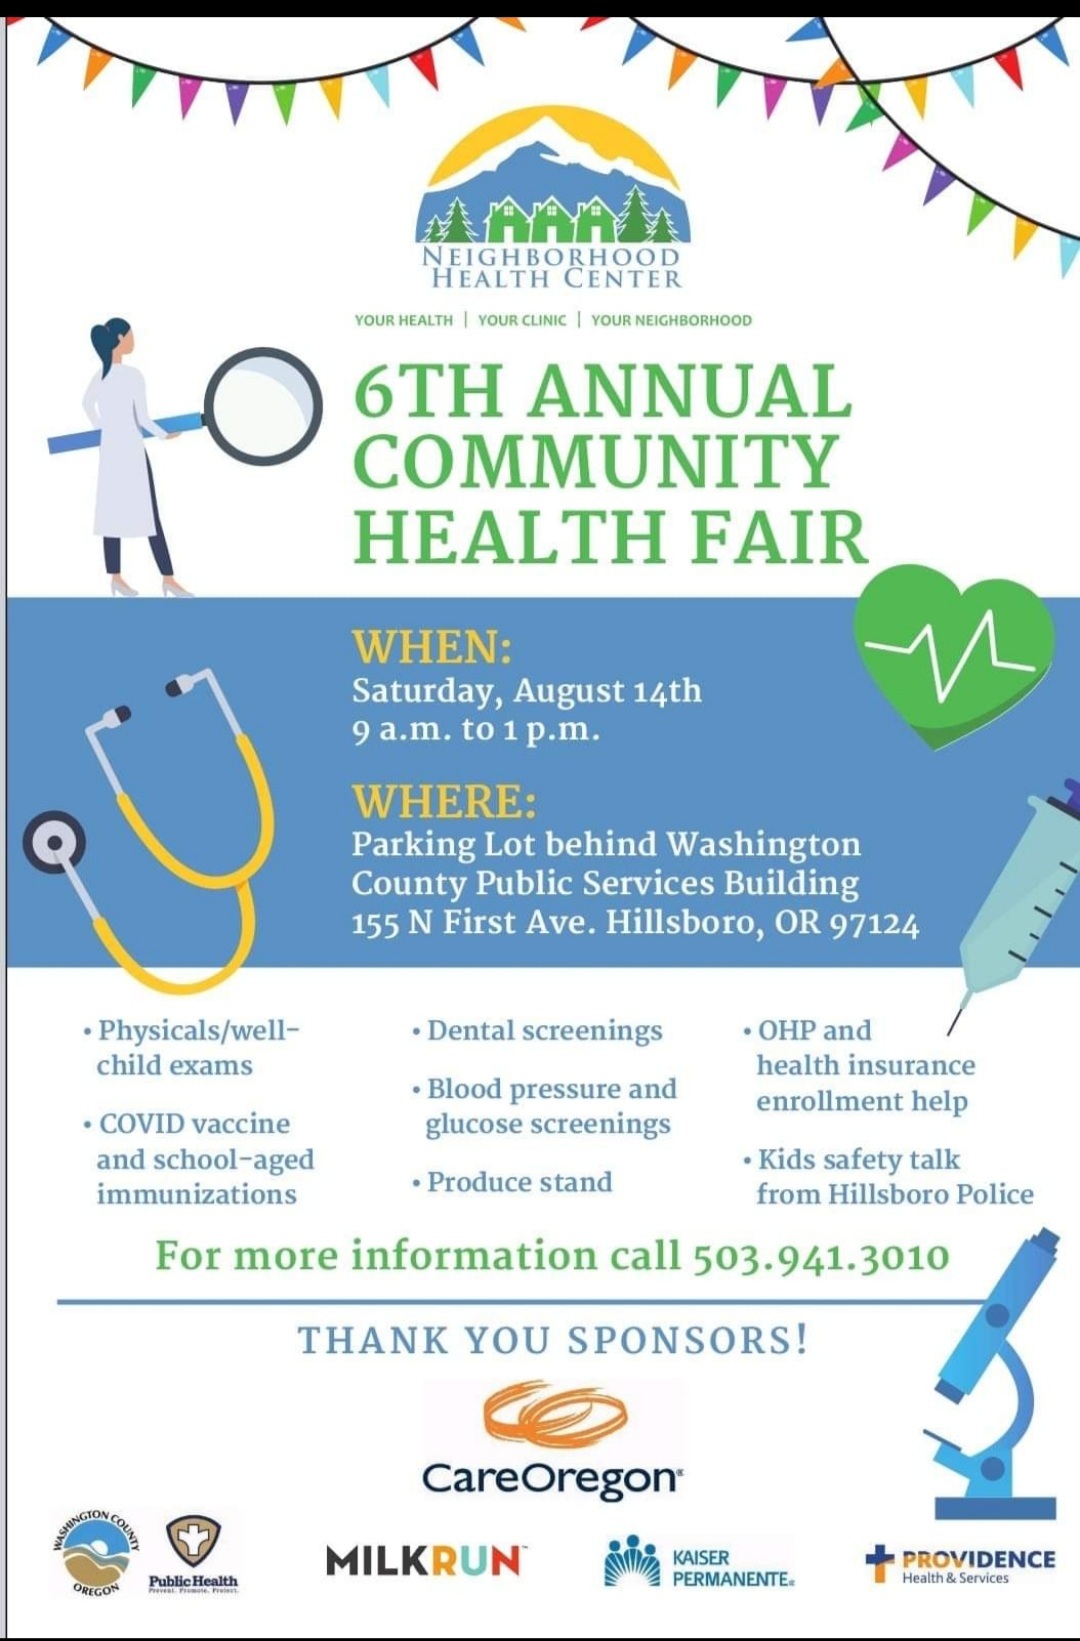 6th Annual Community Health Fair Information